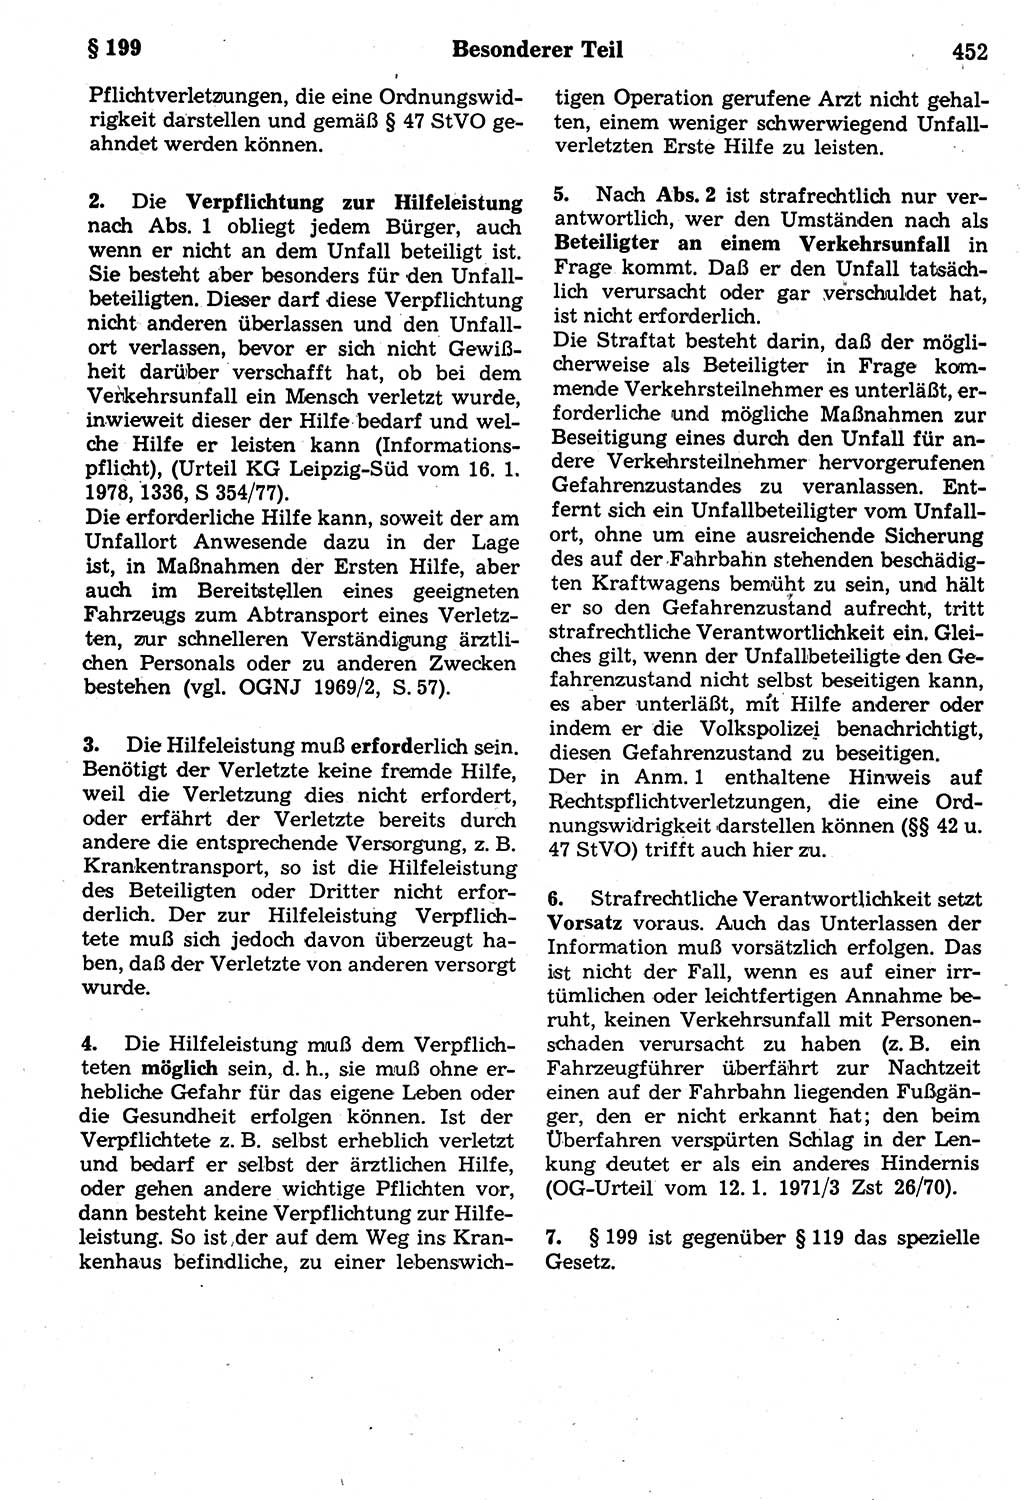 Strafrecht der Deutschen Demokratischen Republik (DDR), Kommentar zum Strafgesetzbuch (StGB) 1987, Seite 452 (Strafr. DDR Komm. StGB 1987, S. 452)